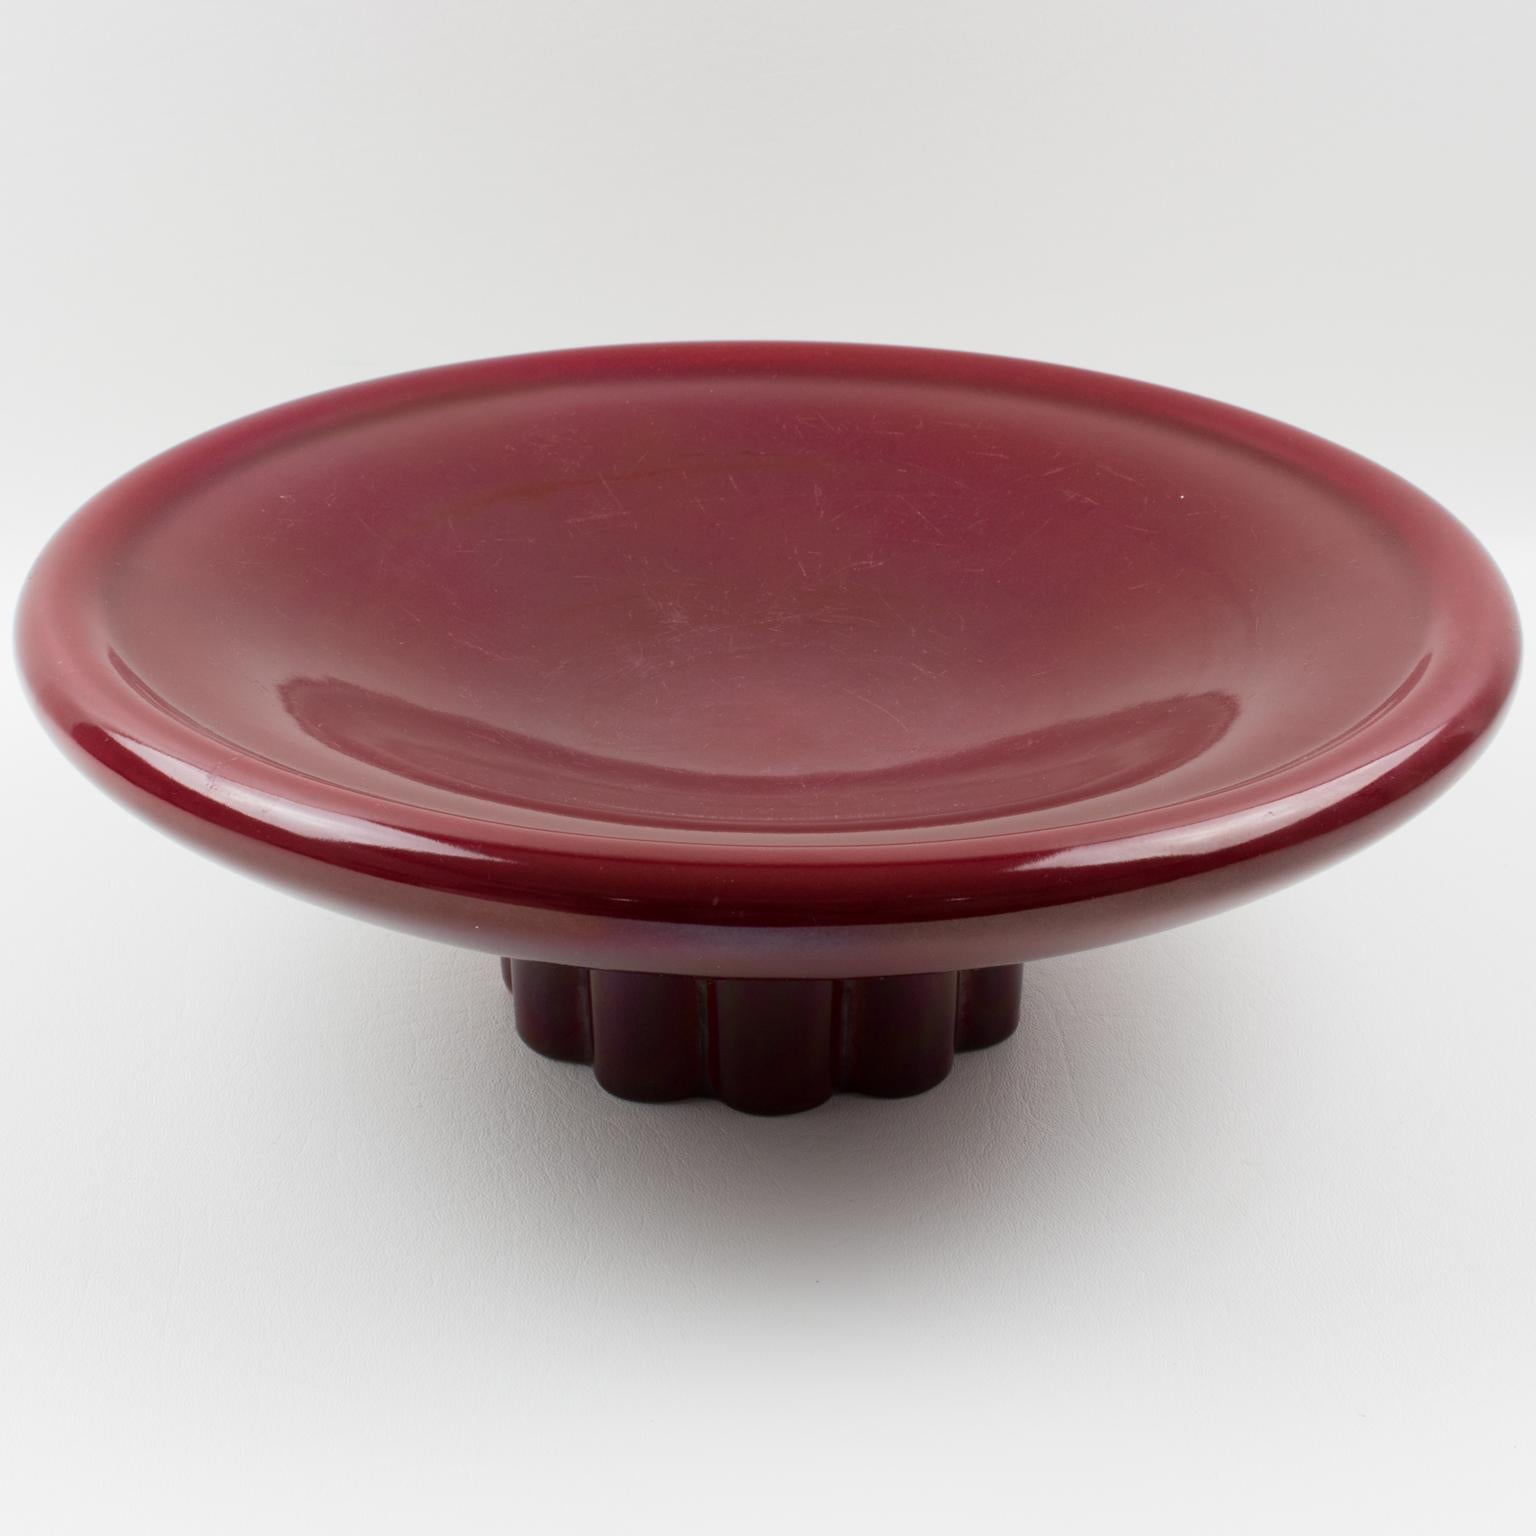 Paul Milet for Sevres Art Deco Oxblood Ceramic Bowl Centerpiece 4